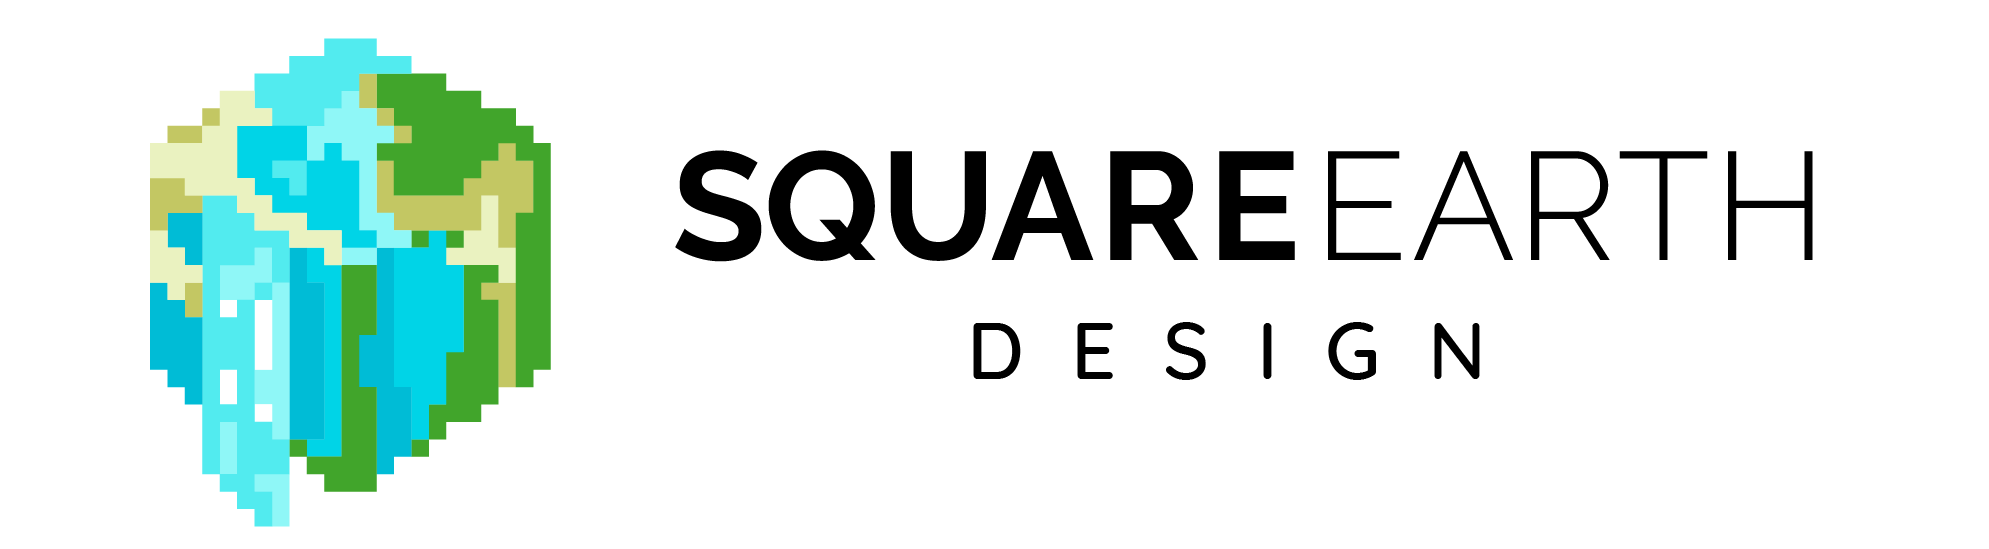 Square Earth Design